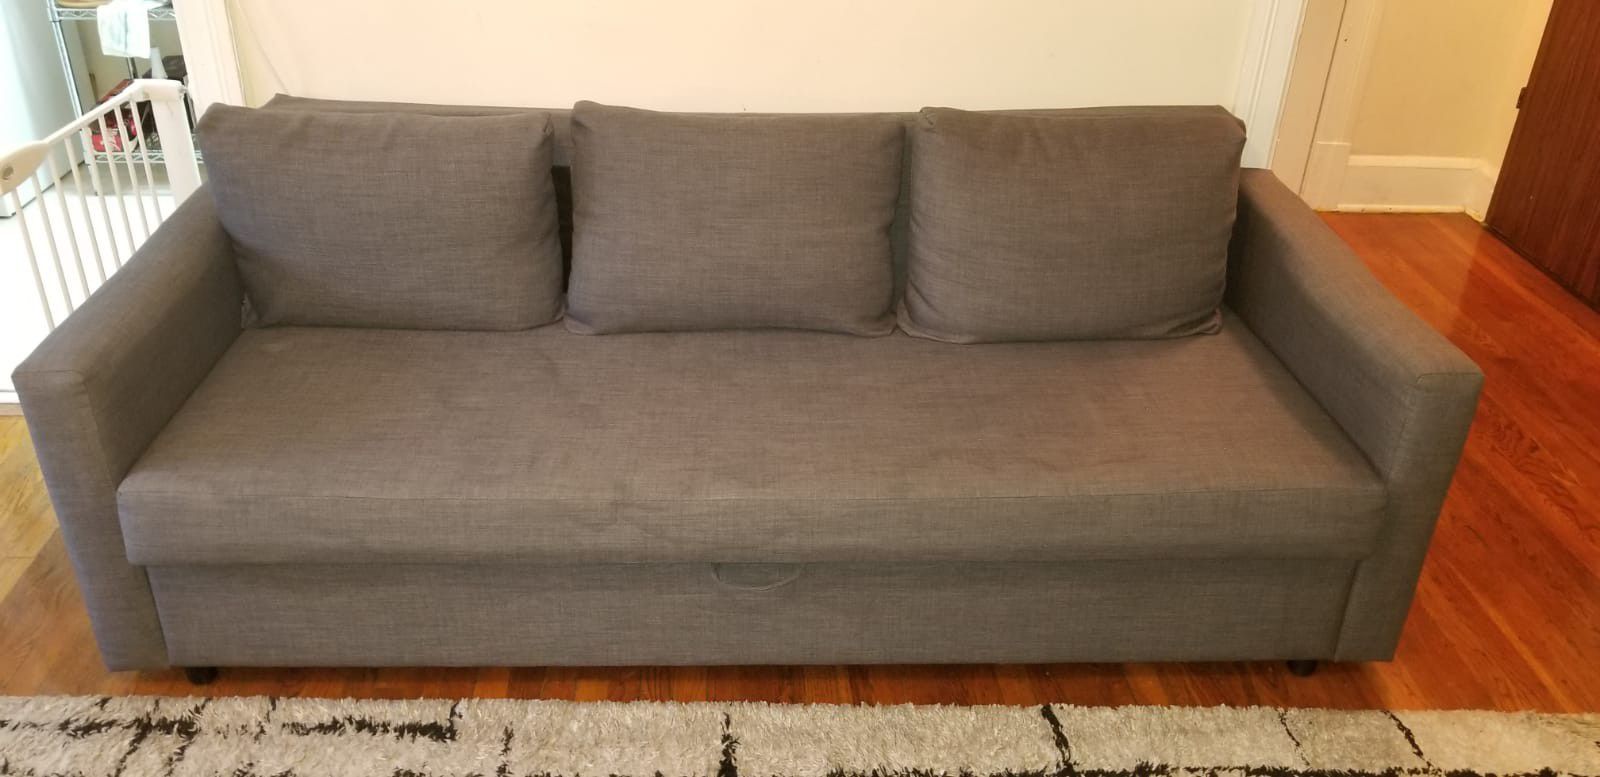 Ikea FRIHETEN sleeper sofa